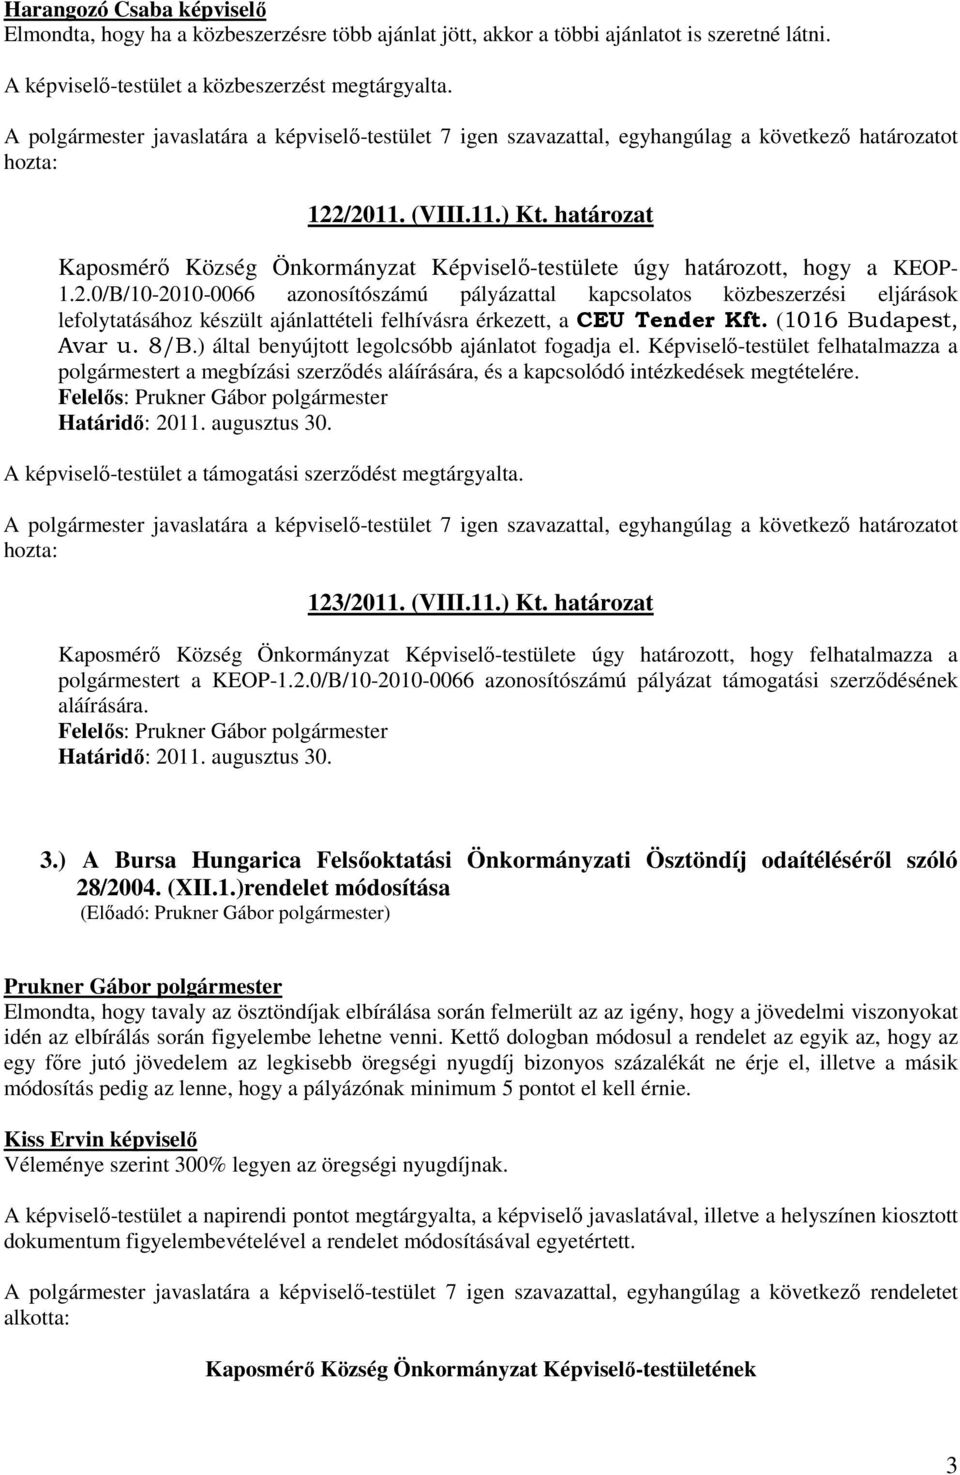 0/B/10-2010-0066 azonosítószámú pályázattal kapcsolatos közbeszerzési eljárások lefolytatásához készült ajánlattételi felhívásra érkezett, a CEU Tender Kft. (1016 Budapest, Avar u. 8/B.